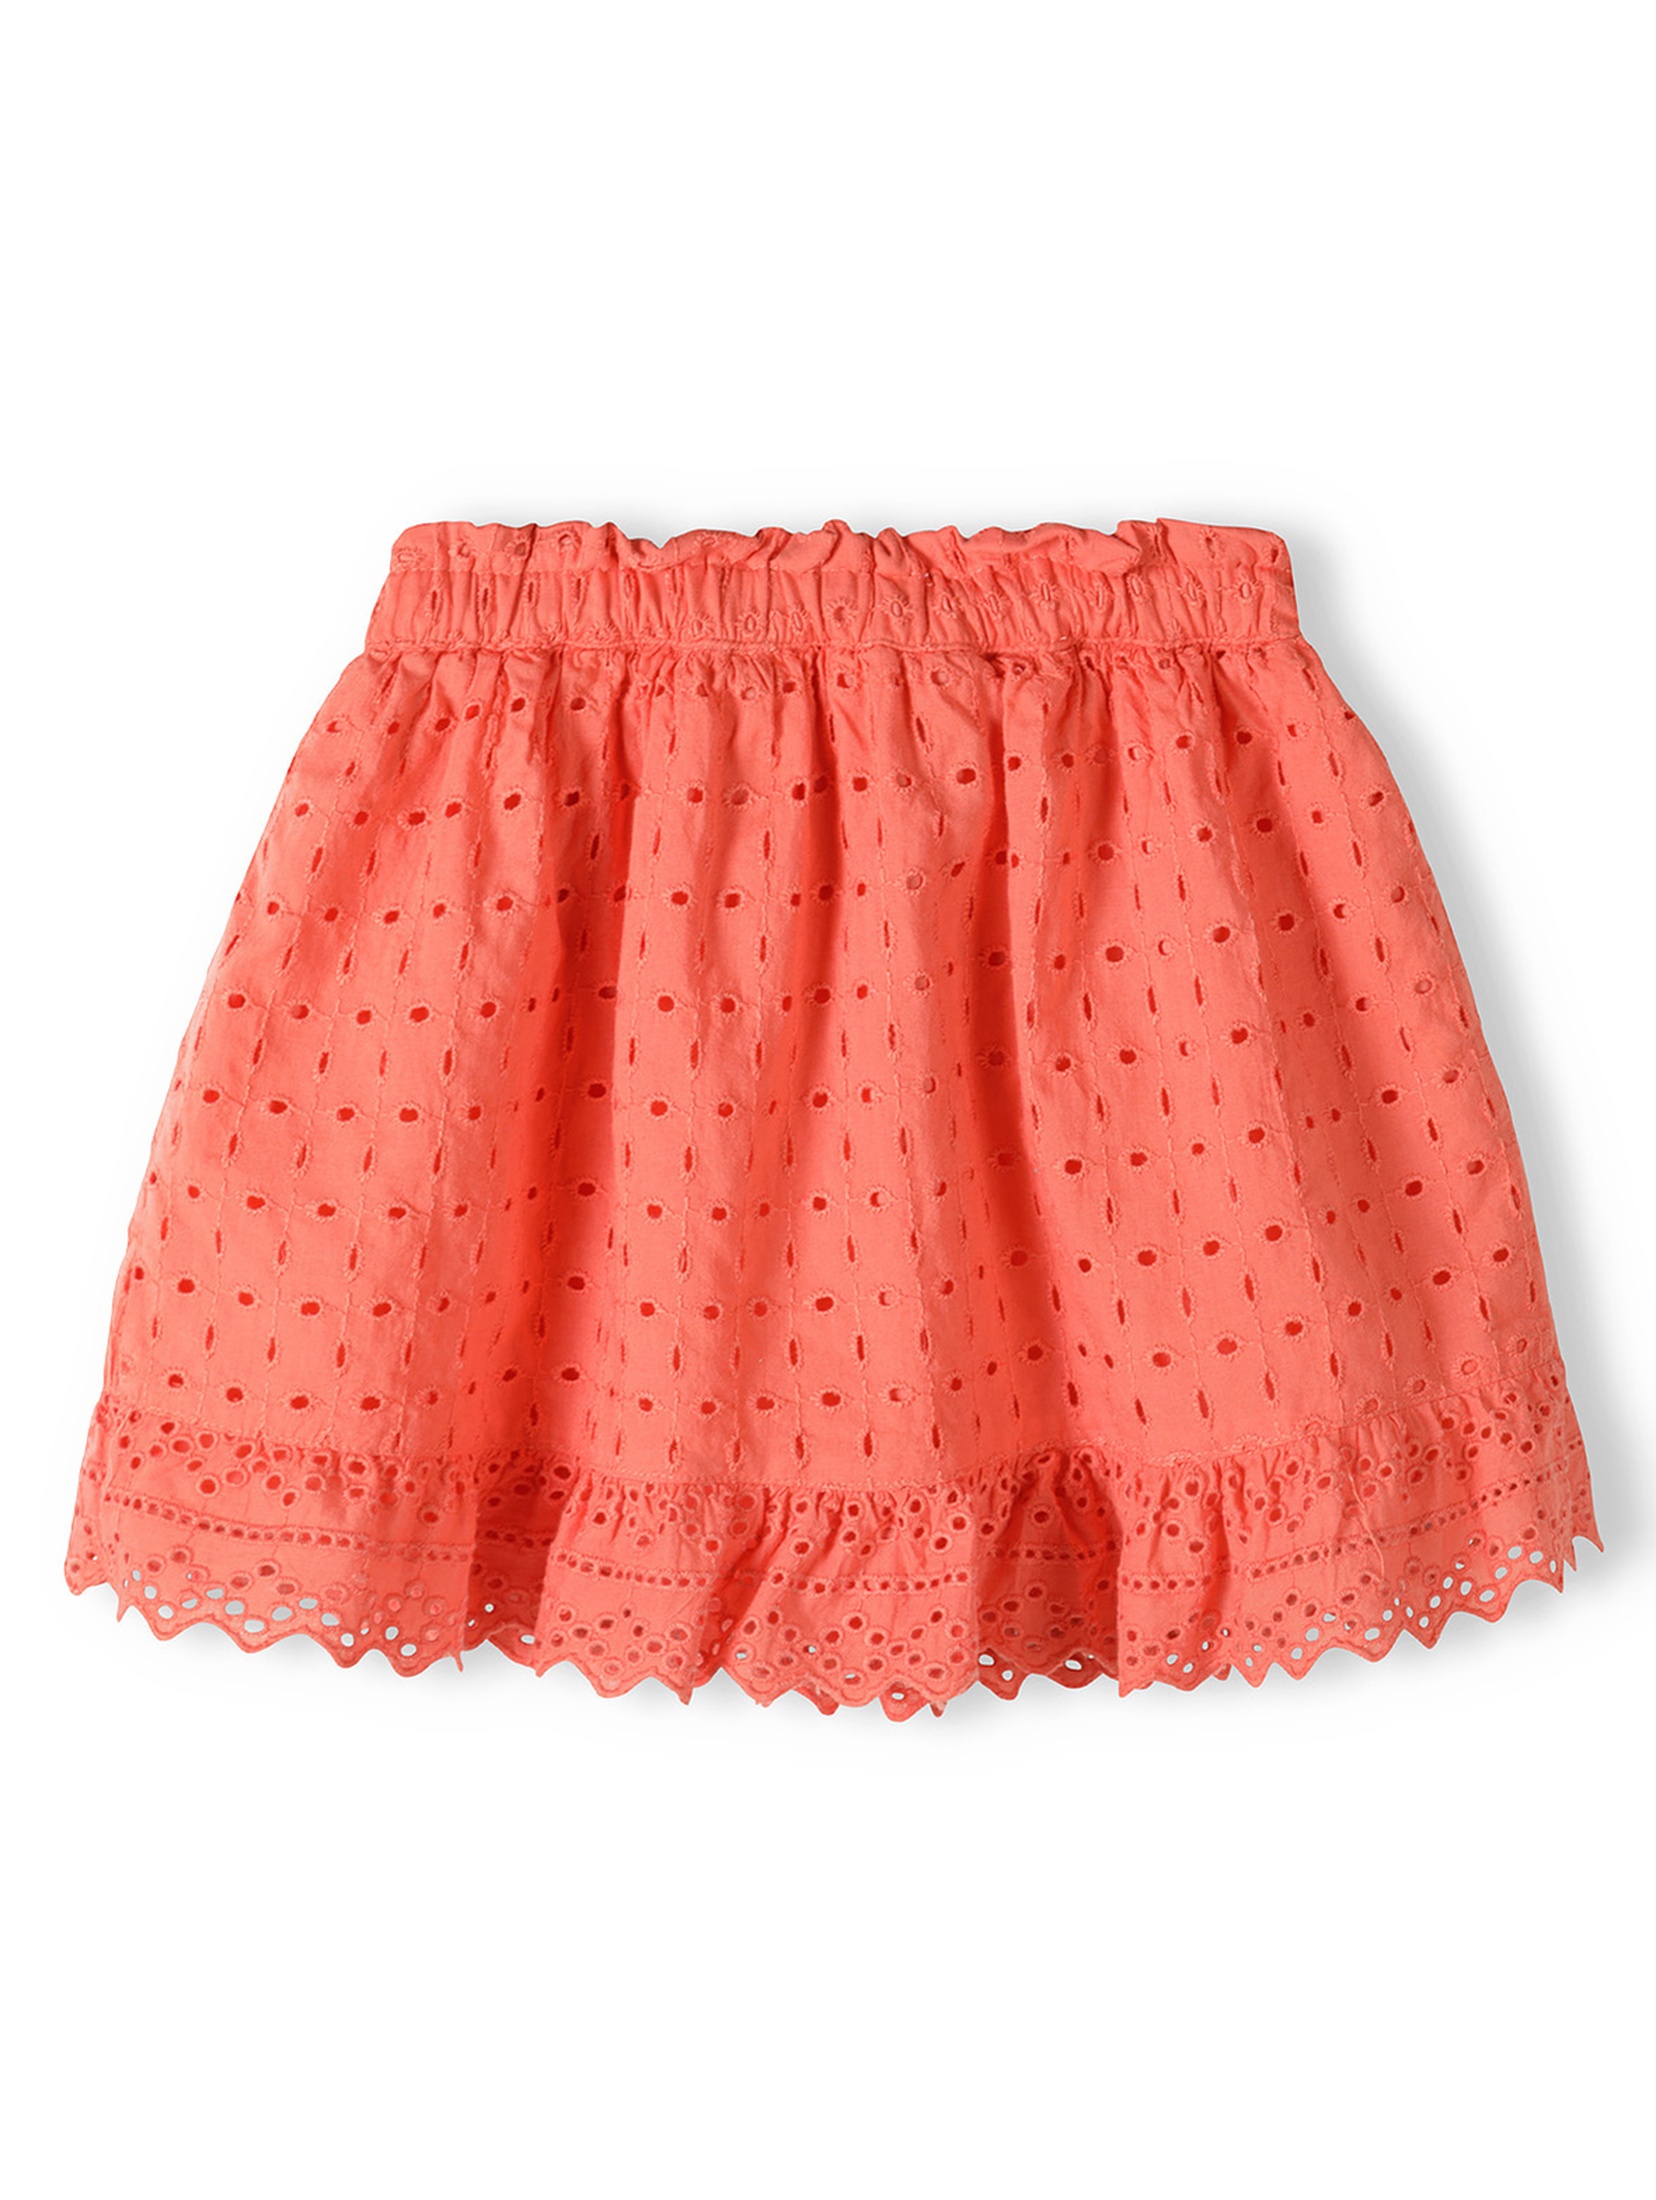 Pomarańczowa spódnica haftowana krótka dla dziewczynki